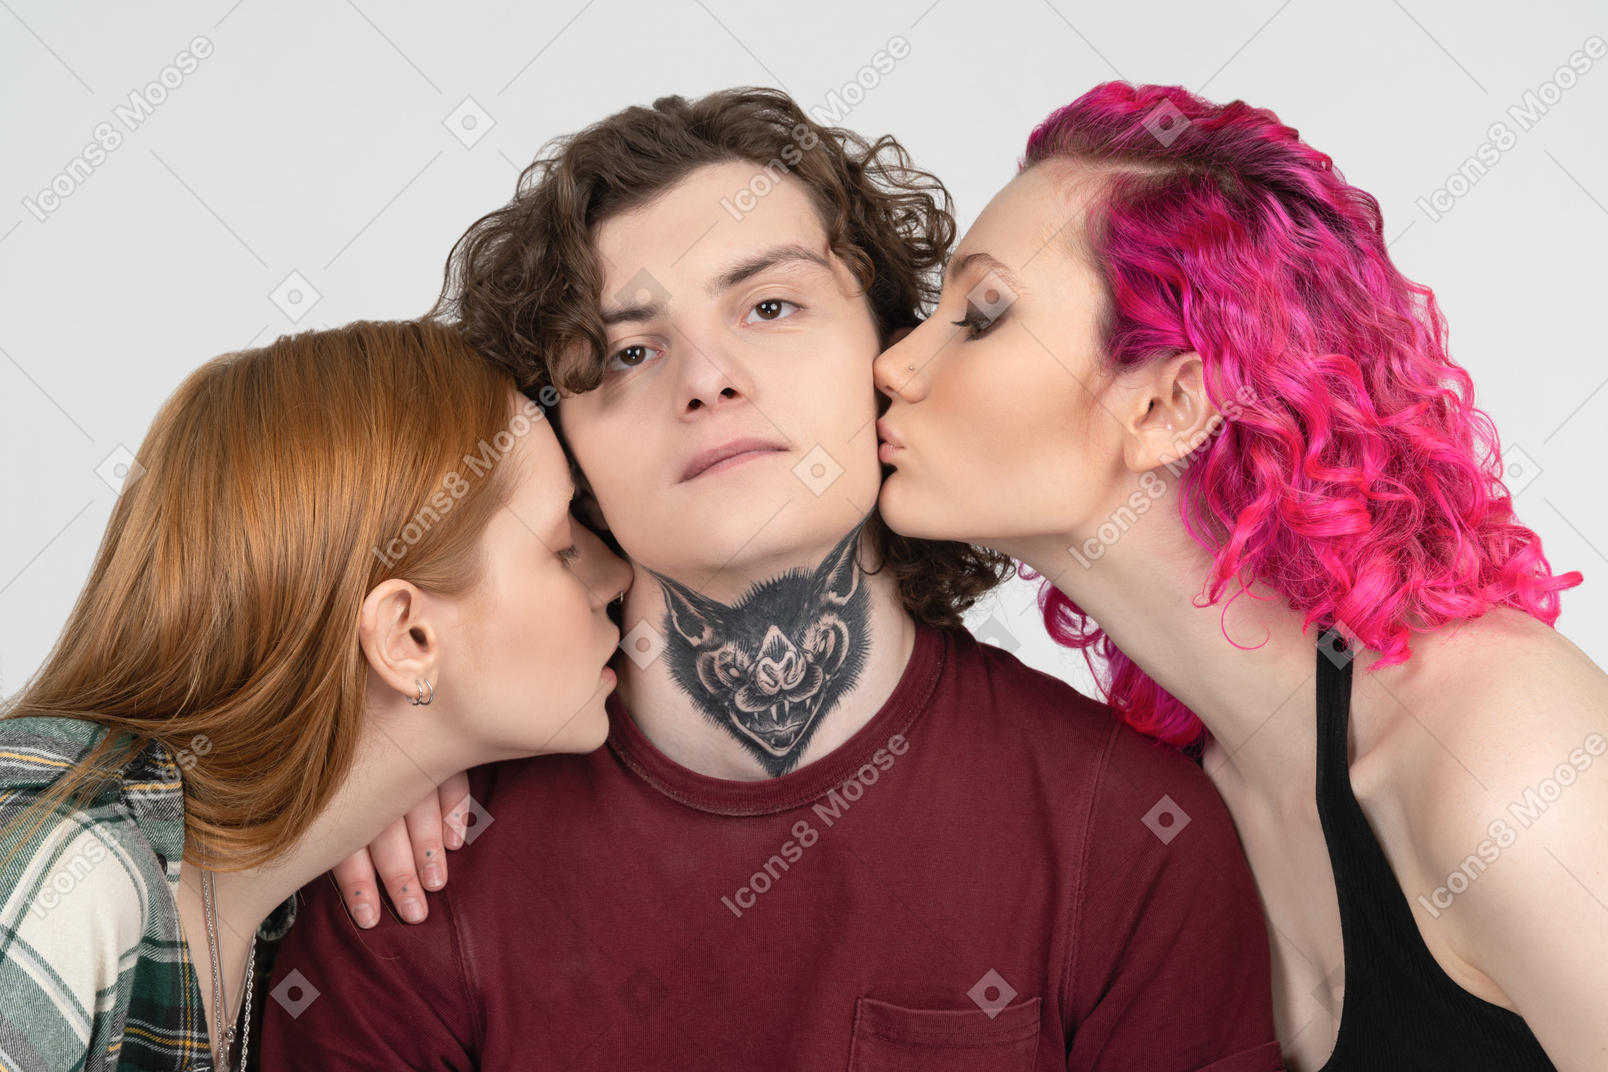 Ragazzo con il tatuaggio baciato da due ragazze adolescenti